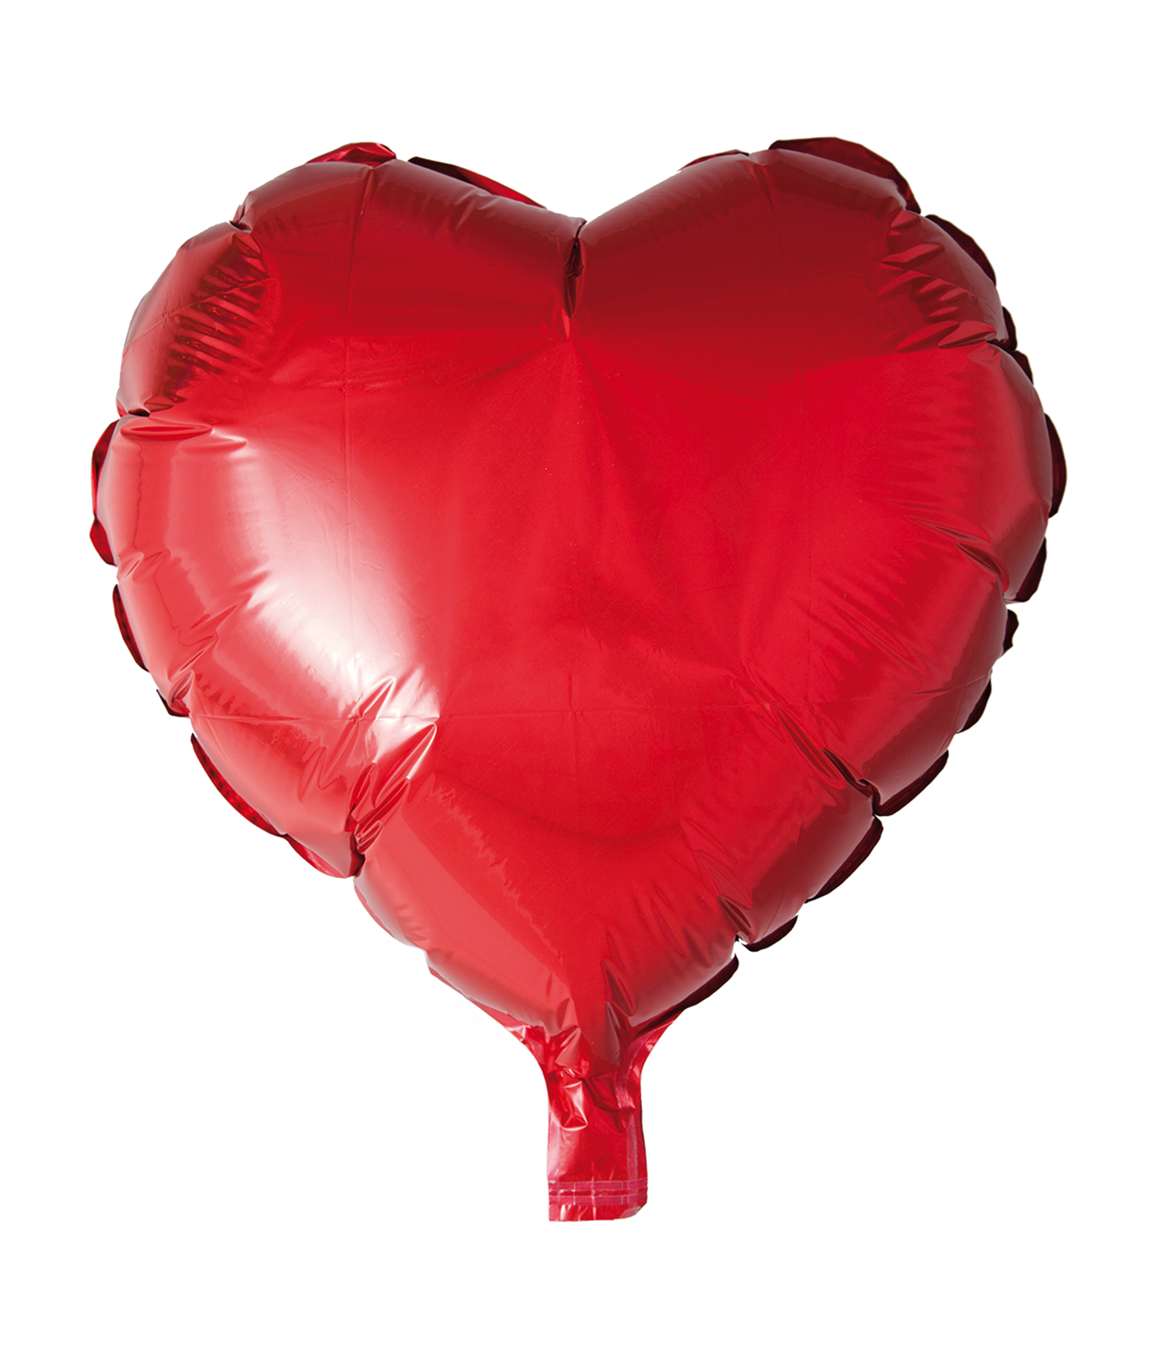 Folieballong Hjärta röd